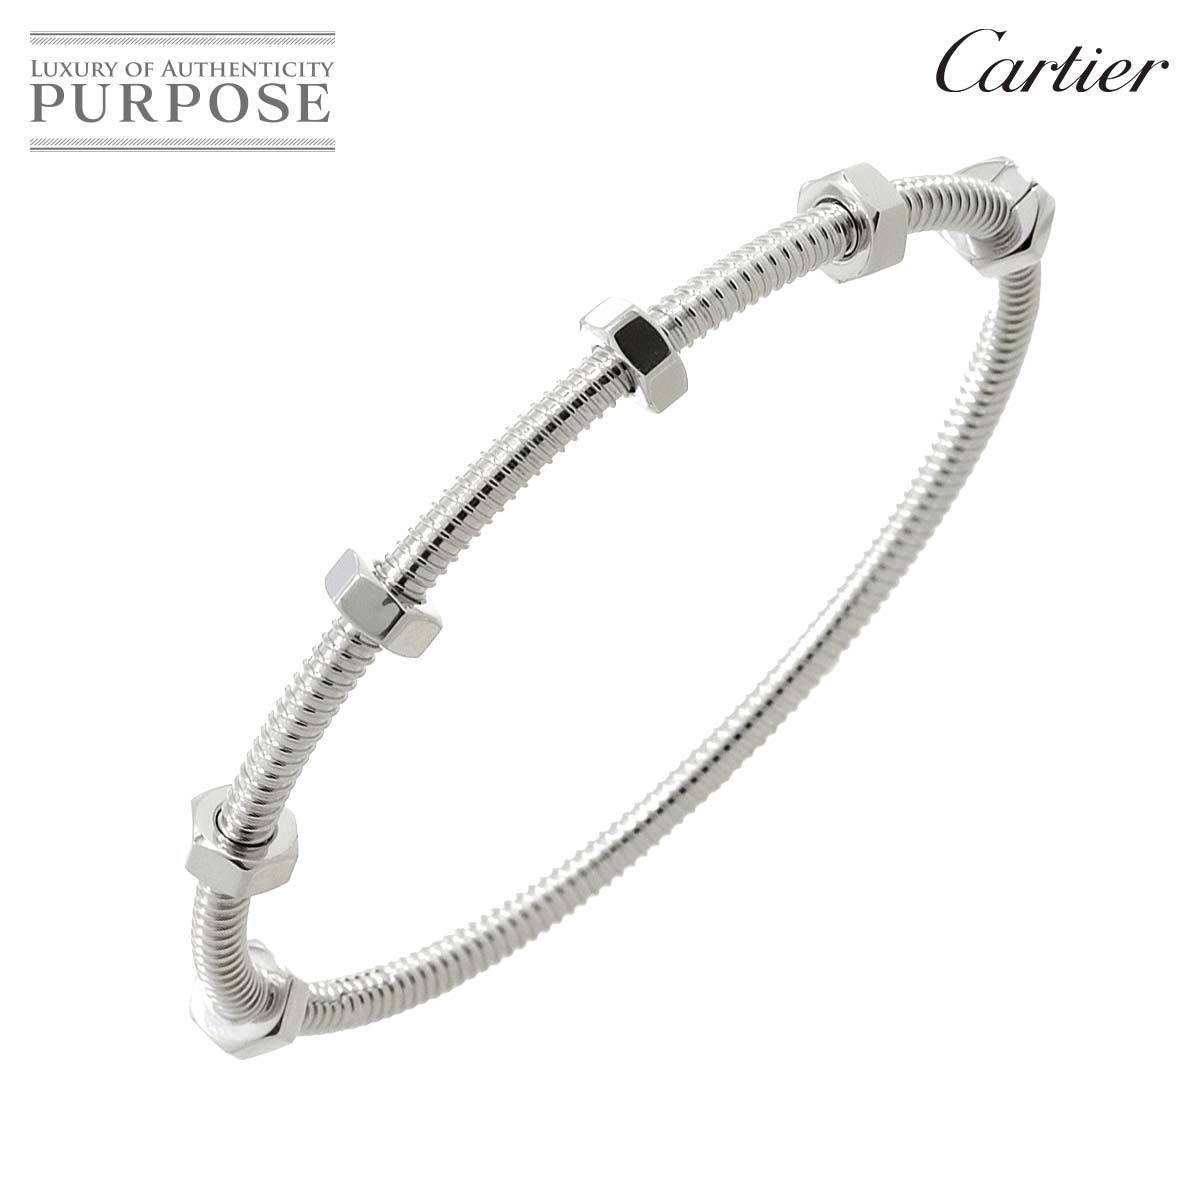 カルティエ Cartier エクル ドゥ #18 ブレスレット K18 WG ホワイトゴールド 750 ECROU DE Bracelet【証明書付き】 90220949